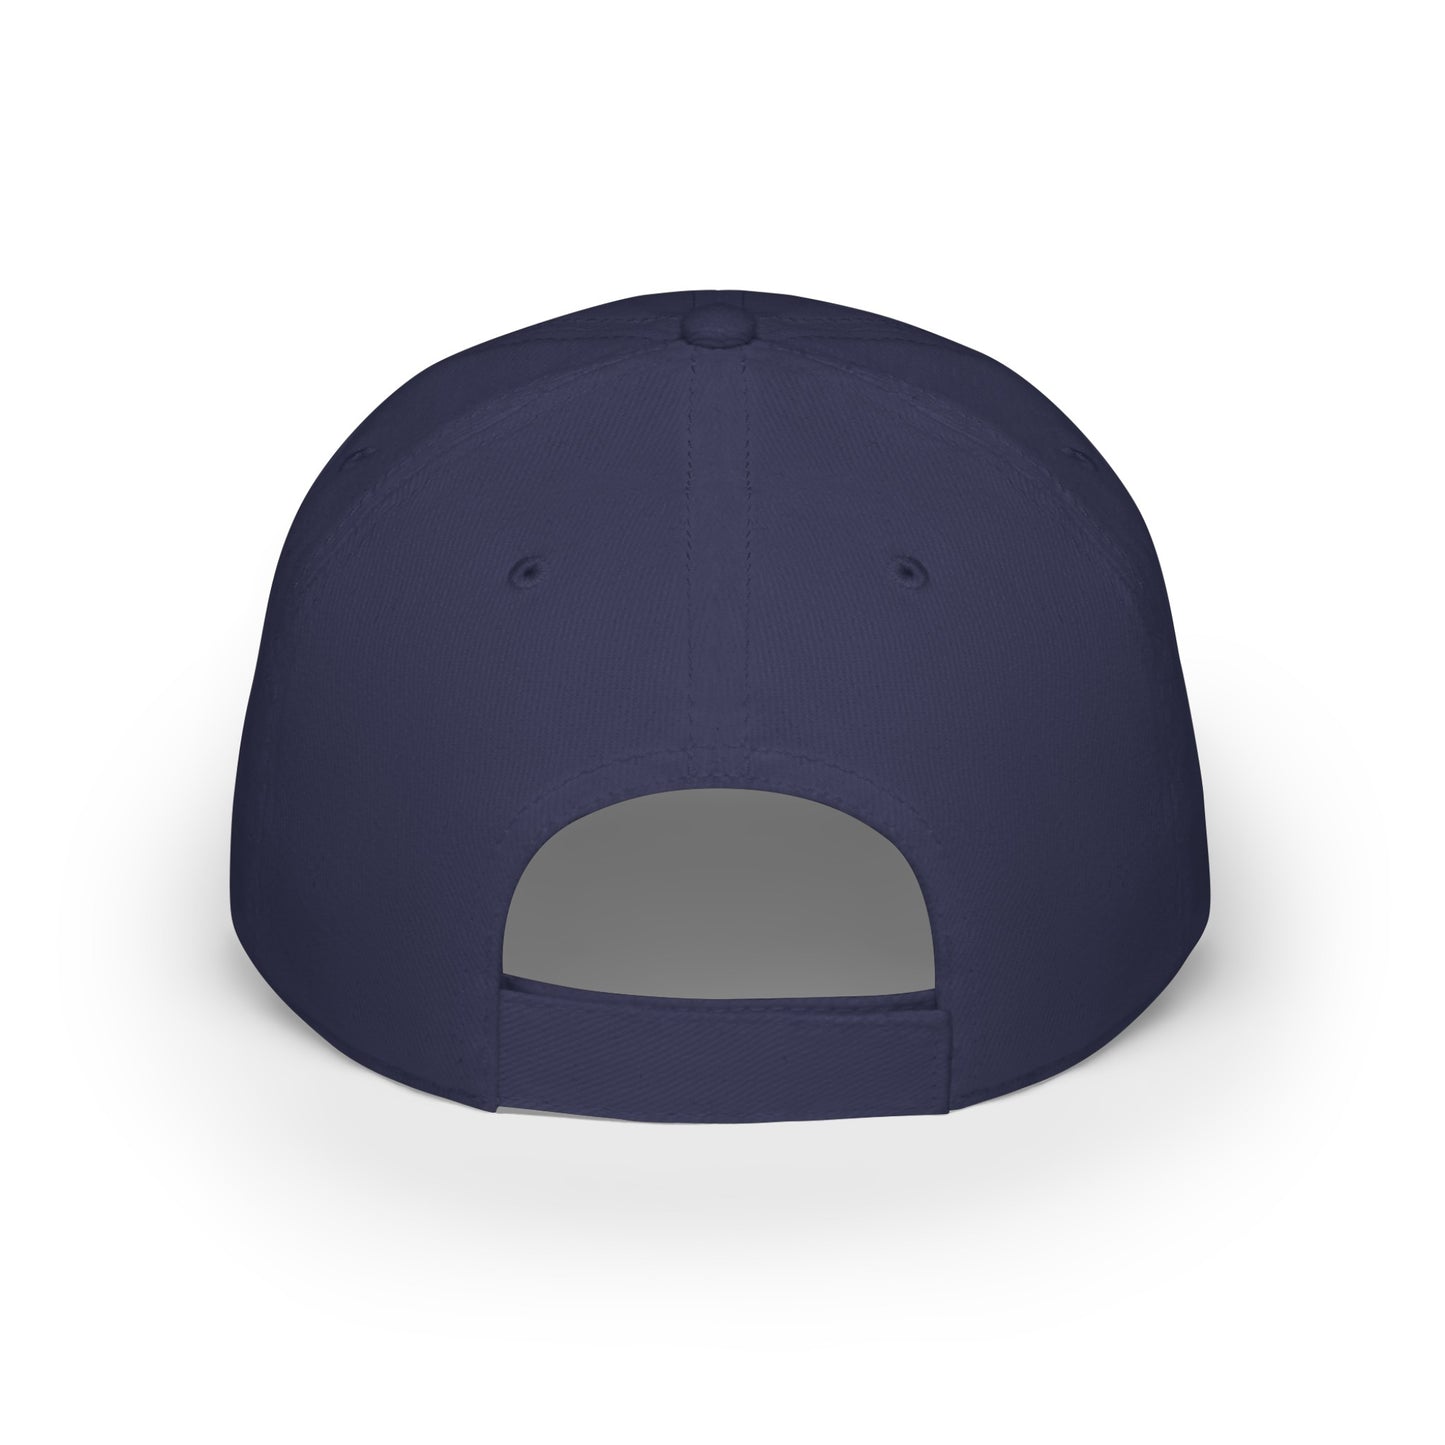 MDBTDJ#SWBC - Low Profile Baseball Cap Tattooed Dj's Limited Edition, Hats, Tattooed Djs Shop